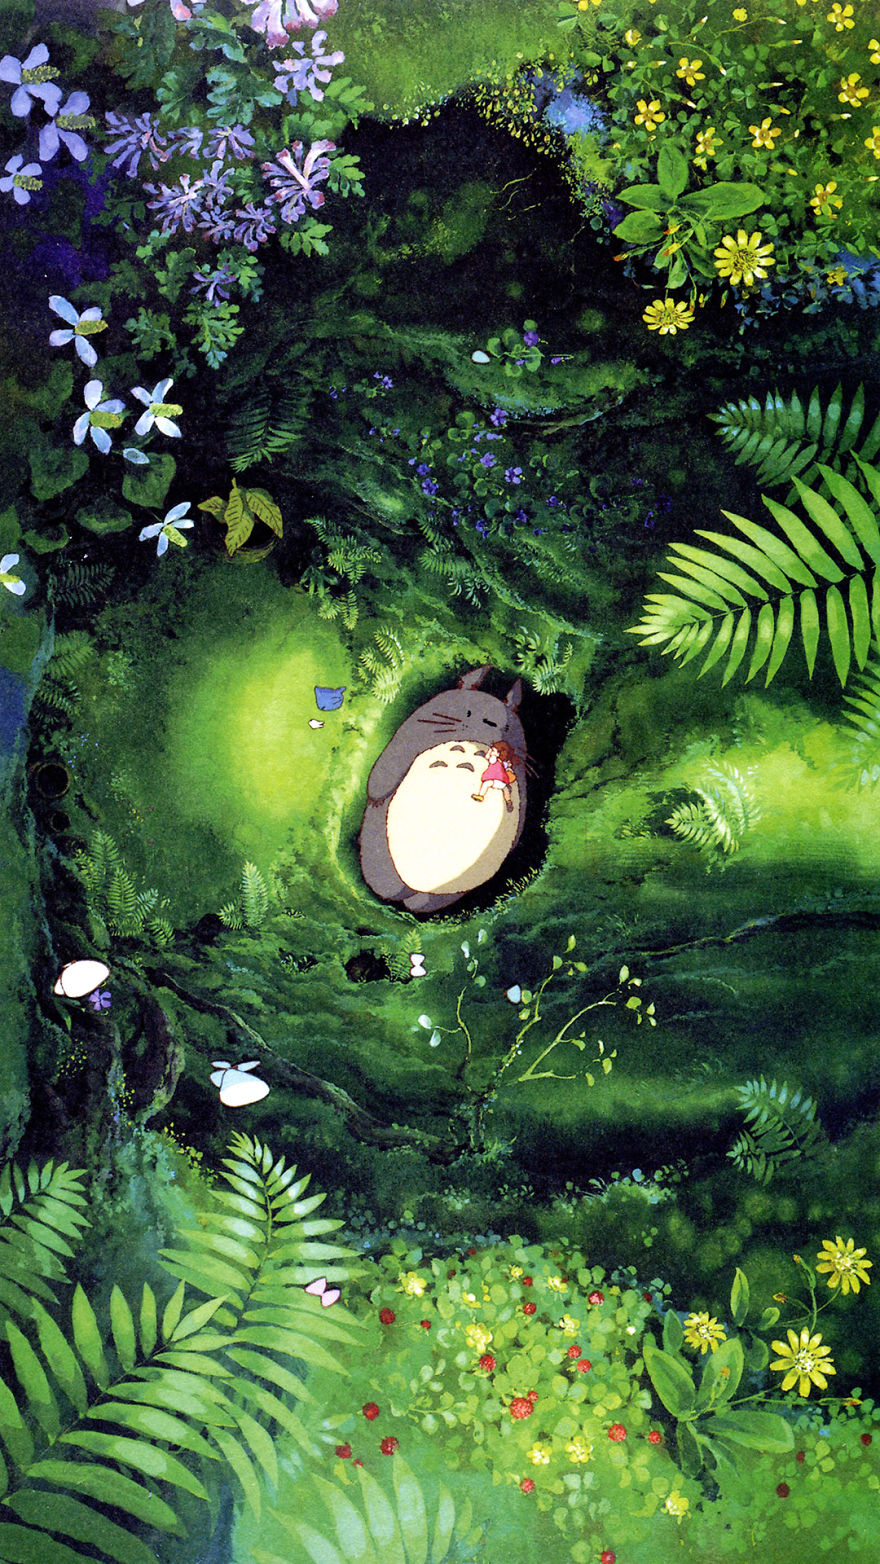 Studio Ghibli Themed Wallpaper For Smartphones Bored Panda